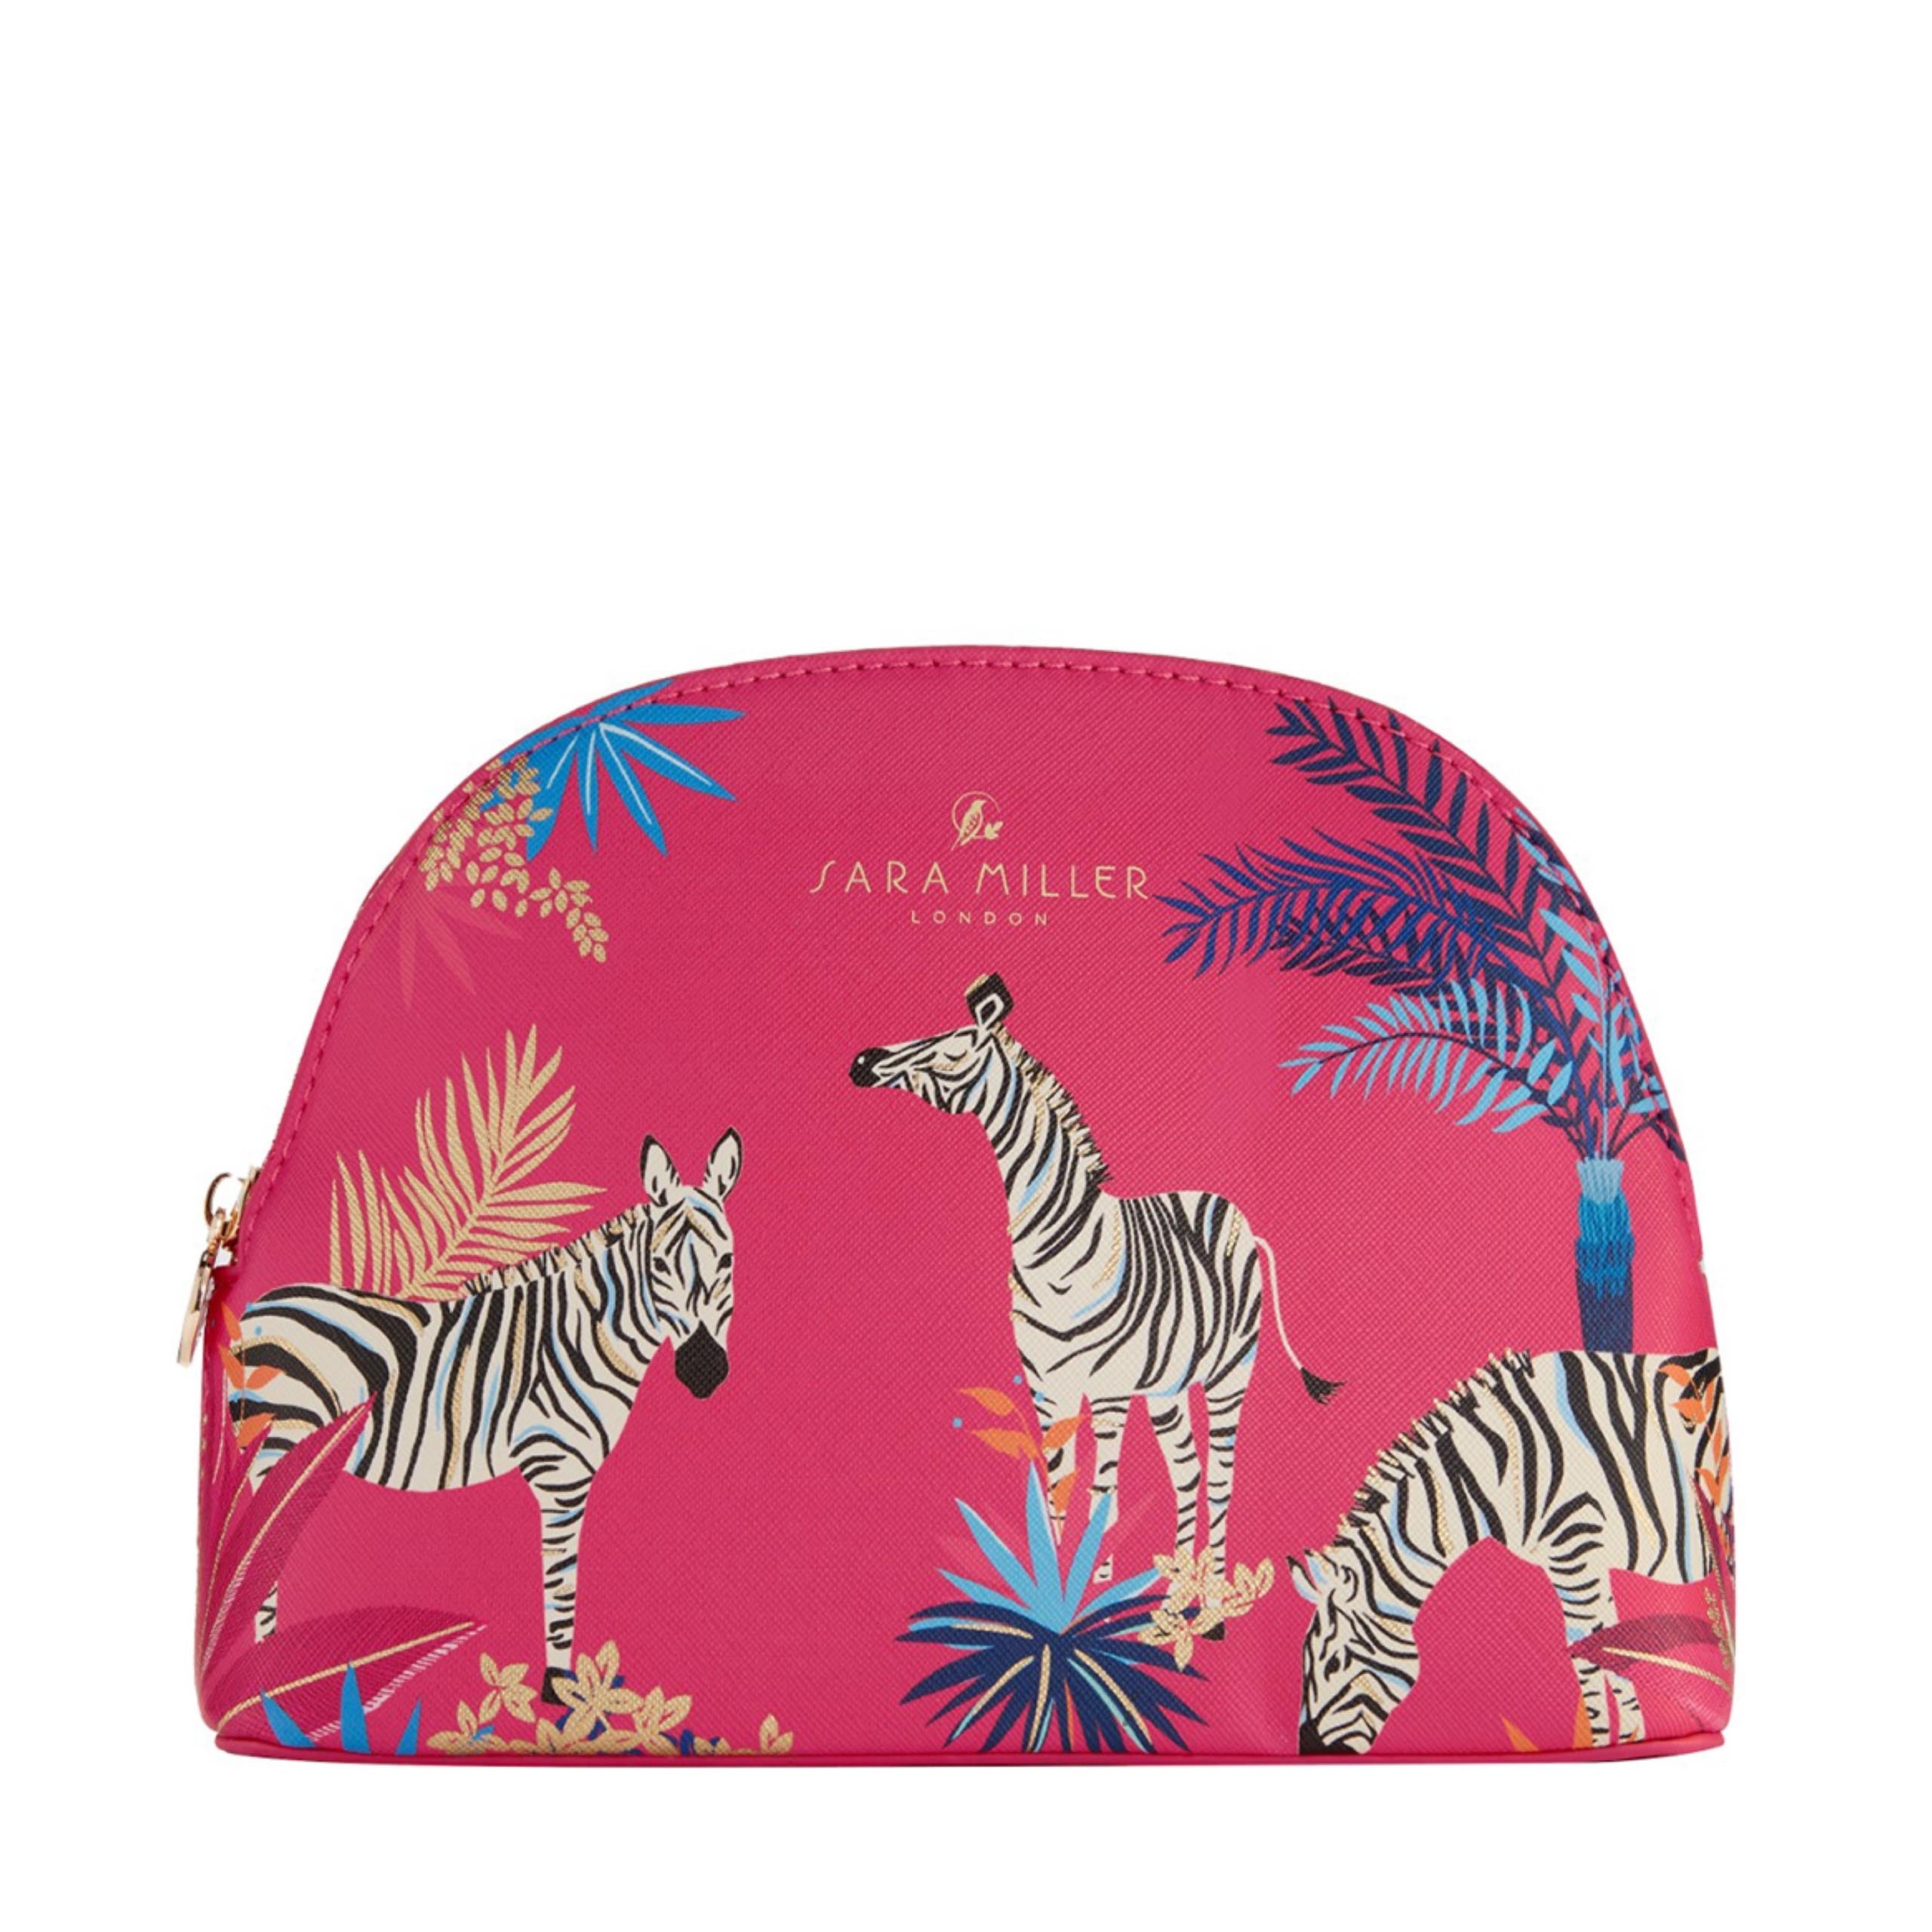 Sara Miller Tahiti Medium Zebras Cosmetic Bag